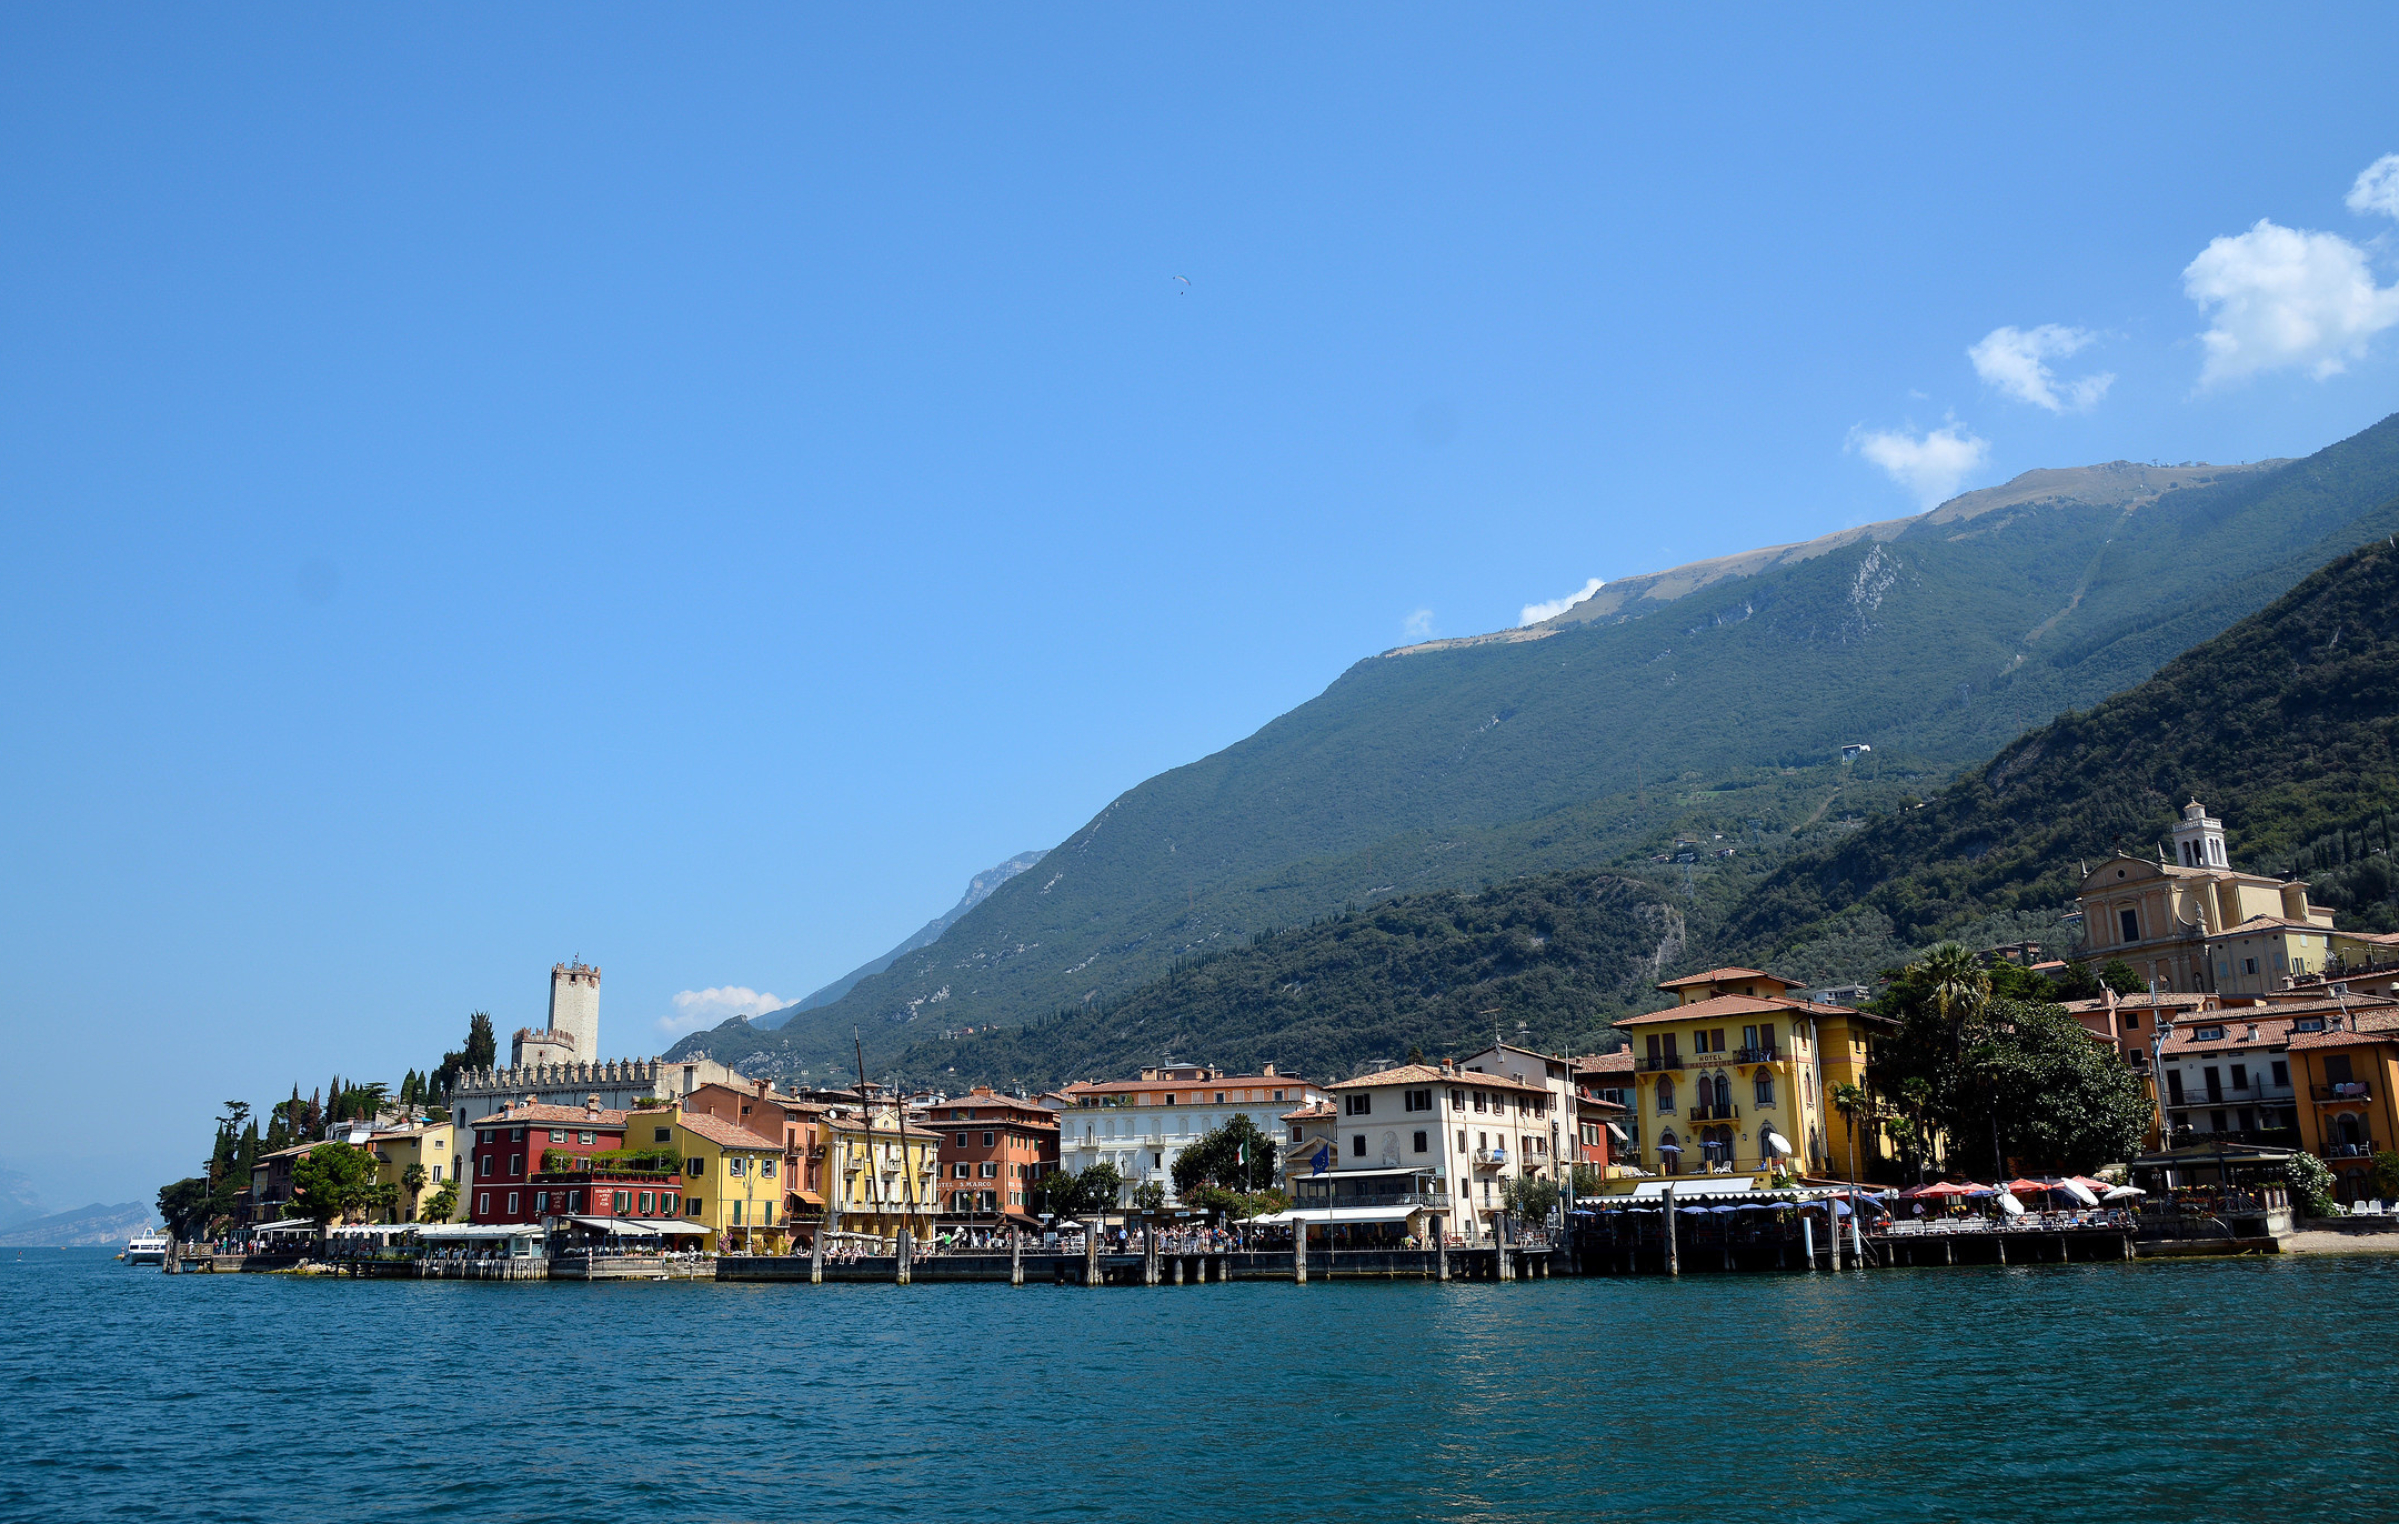 Free image downloads, Lombardy landscapes, Italian beauty, 2400x1530 HD Desktop